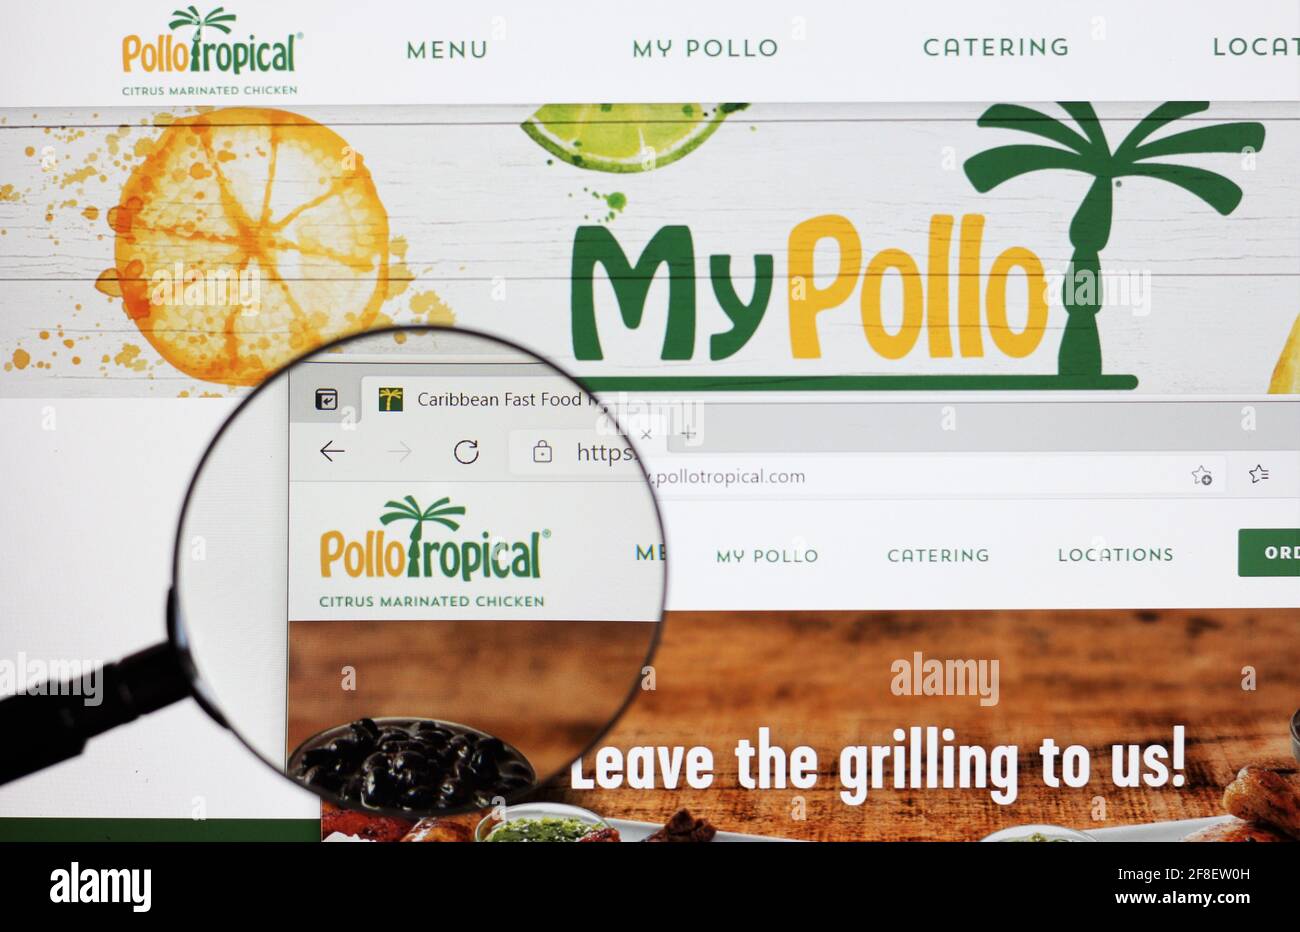 Pollo Tropical, espagnol pour Tropical Chicken est une chaîne de restaurants basée à Miami, en Floride et franchise spécialisée dans la cuisine des Caraïbes. Banque D'Images